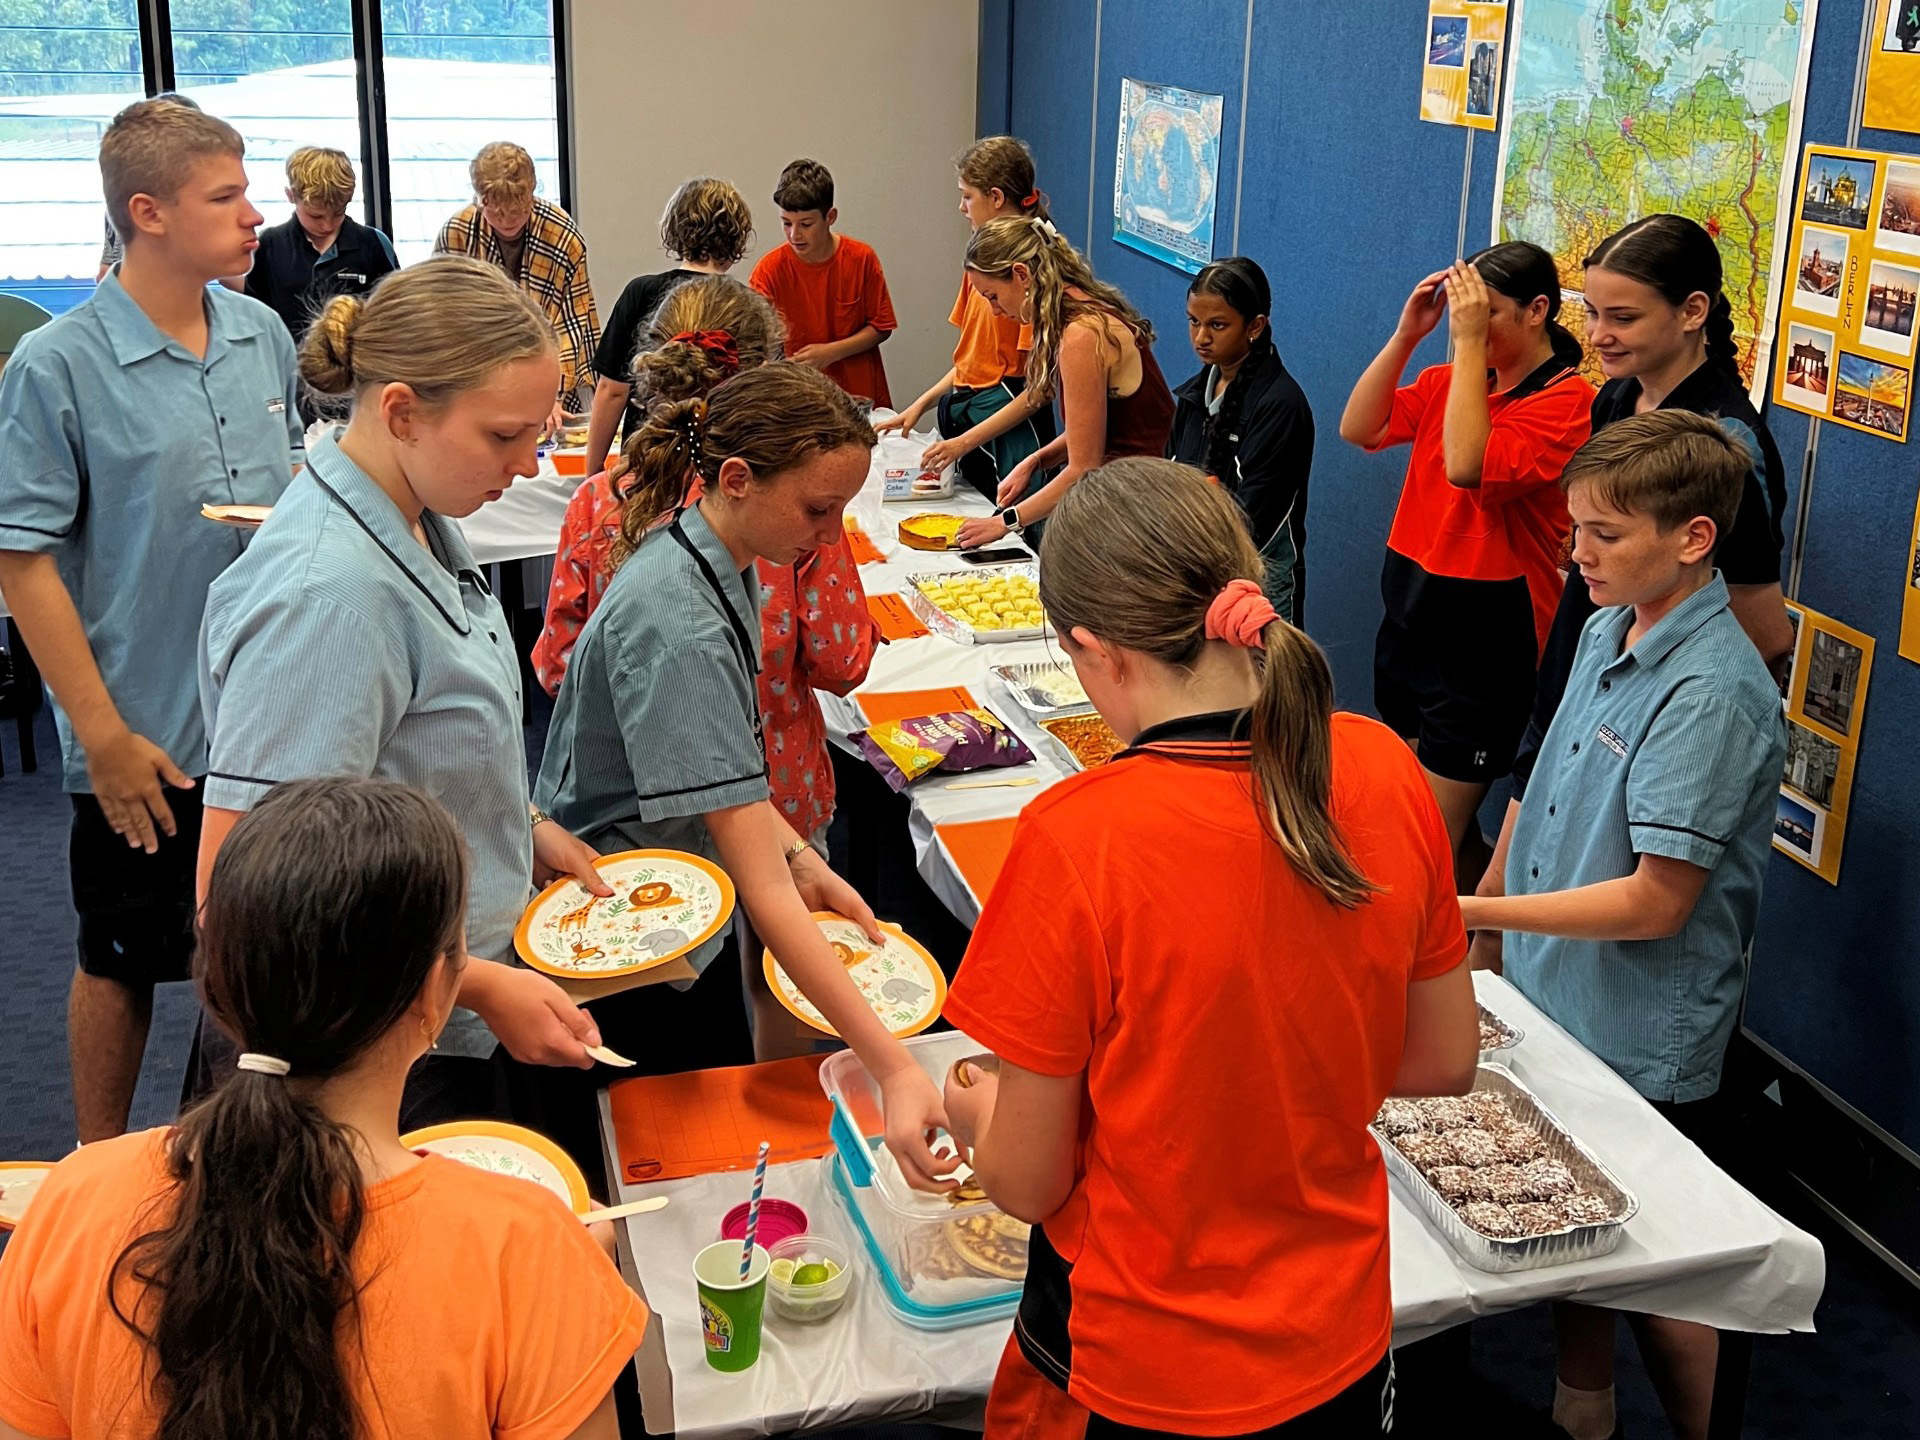 Students sharing food.